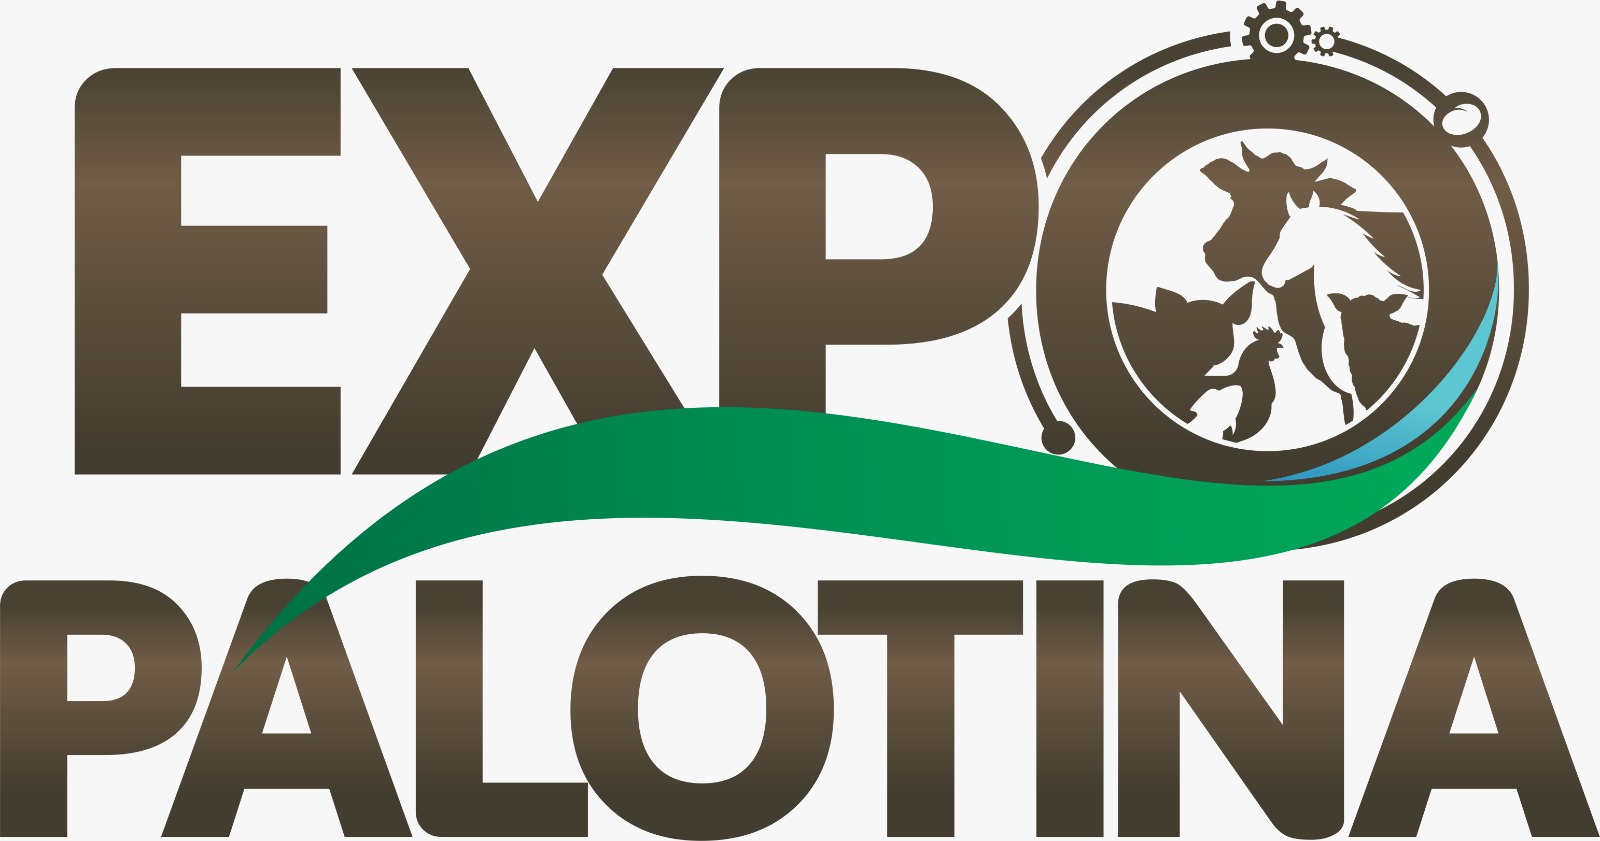 Expo Palotina 2017